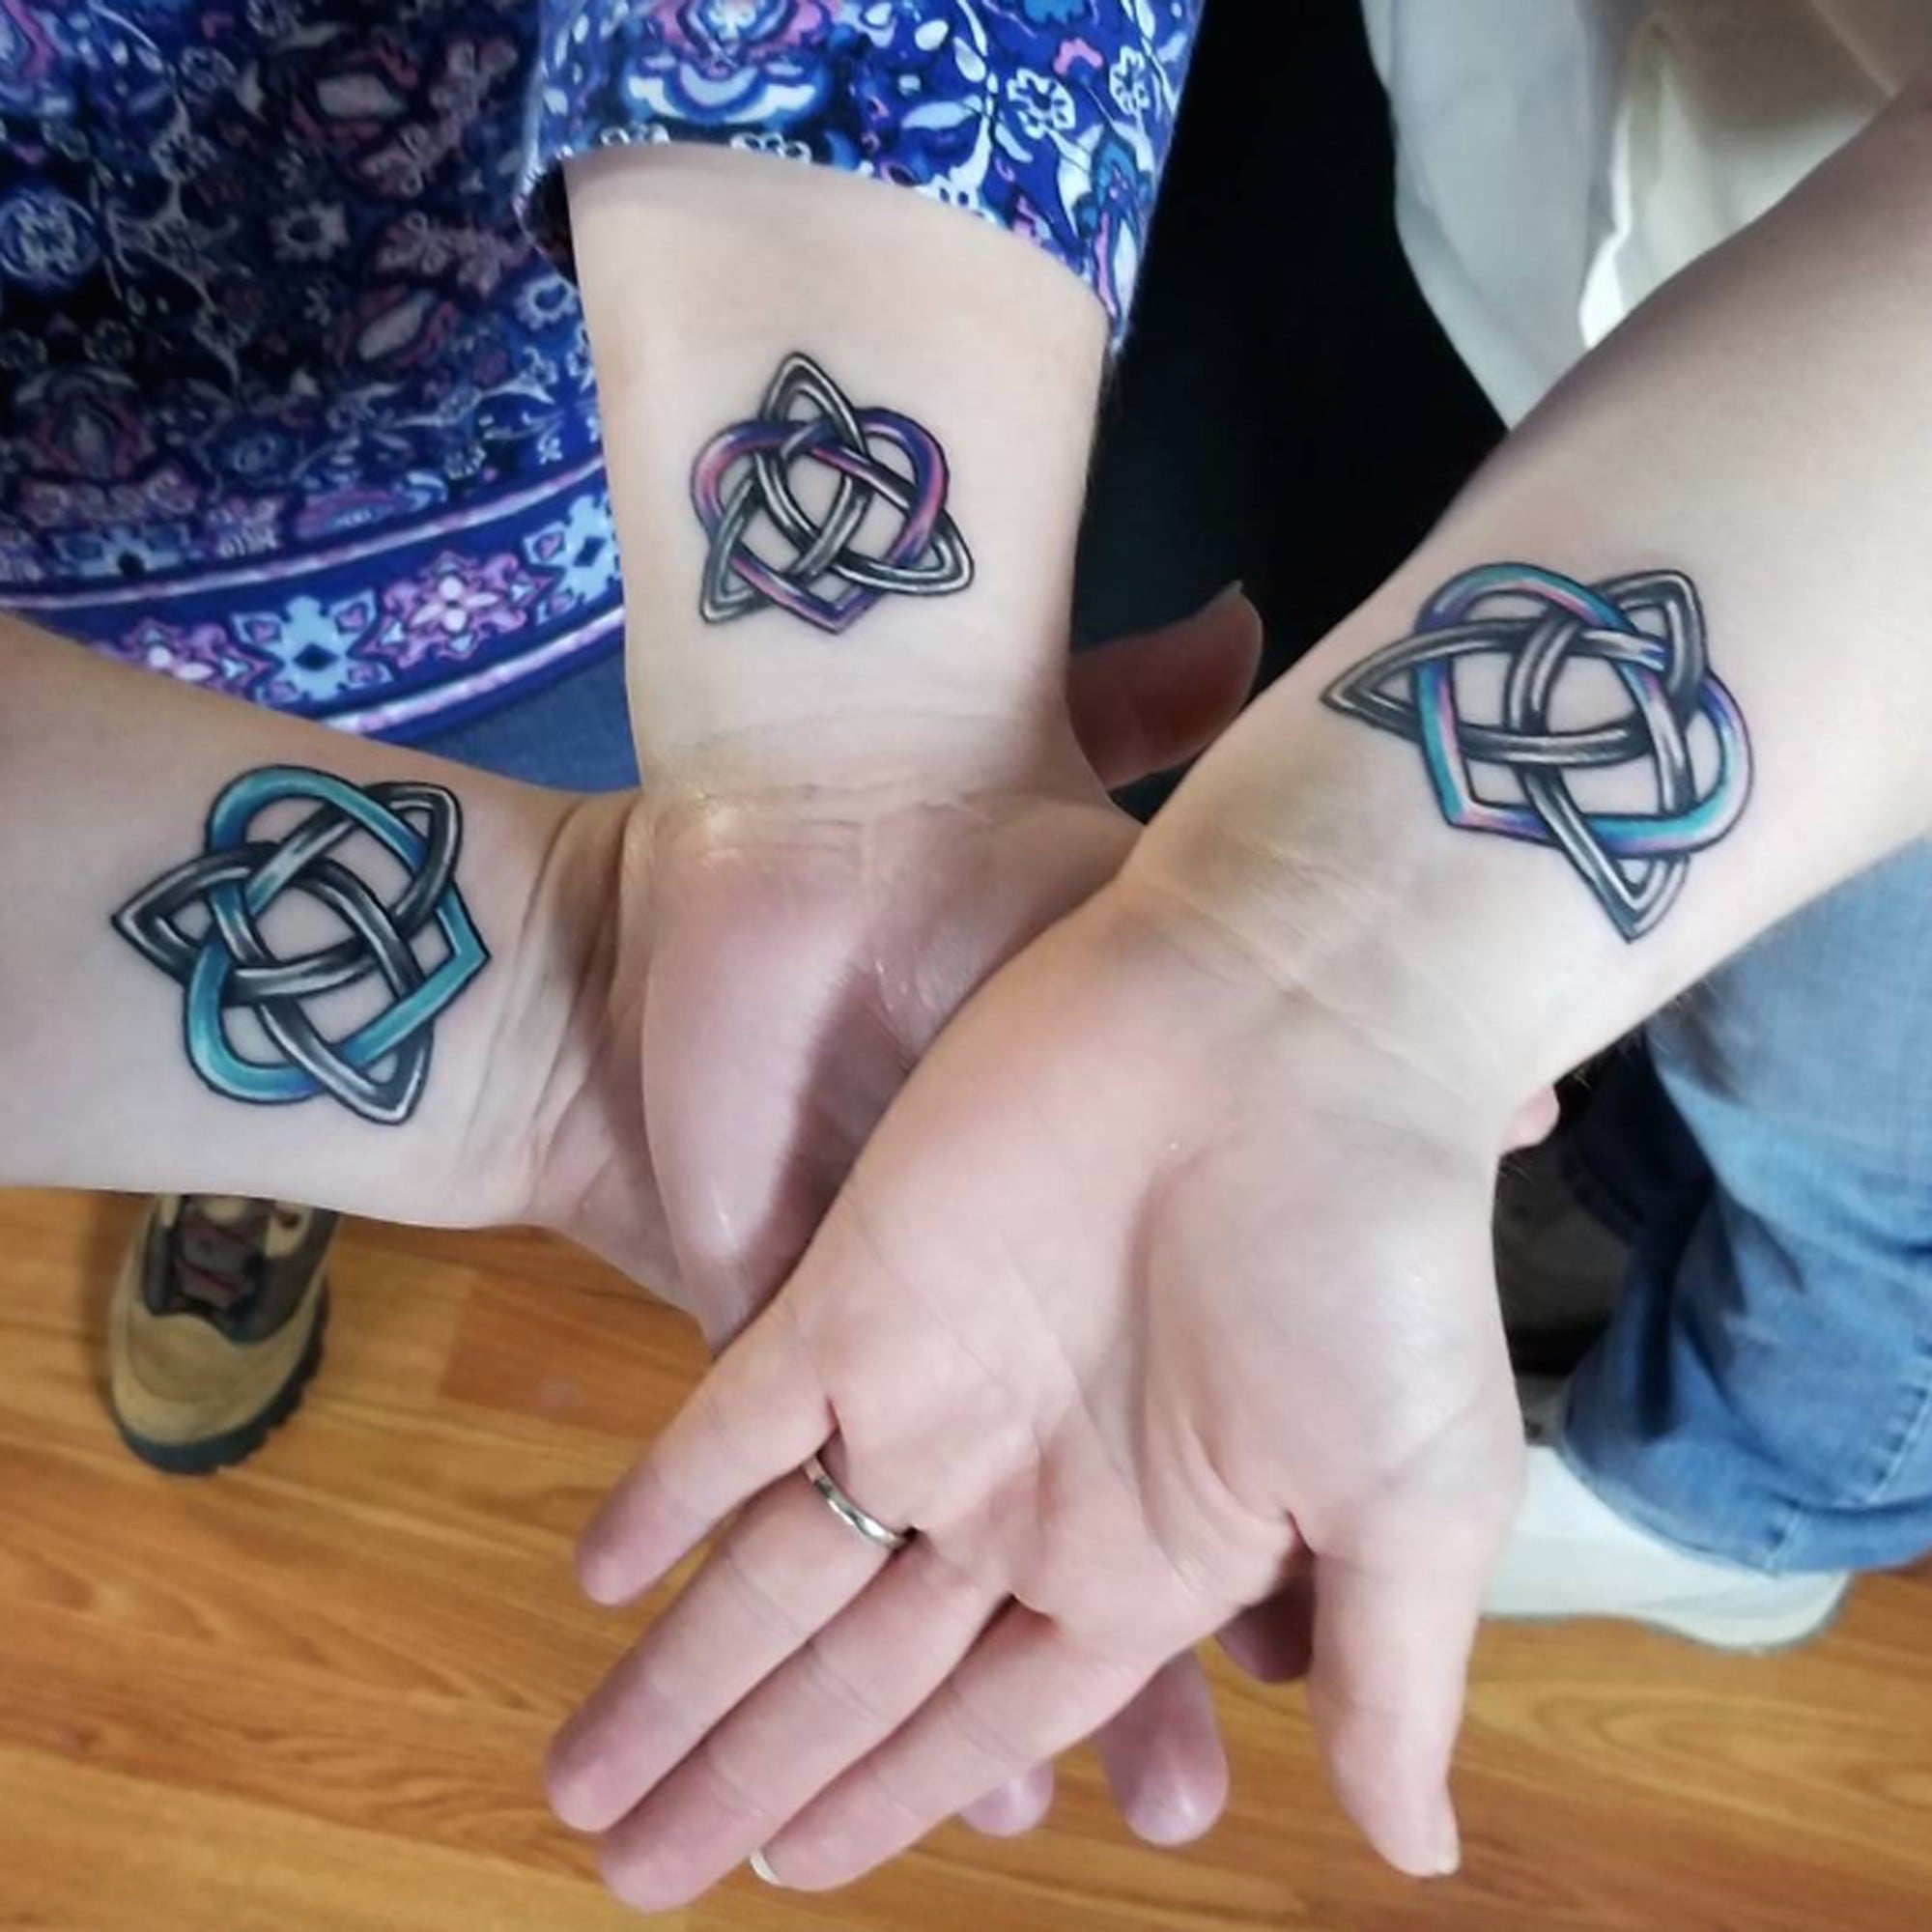 Wrist tattoo 4 pointed Celtic knot Eternal Love Everlasting  Celtic  knot tattoo Wrist tattoos for women Irish knot tattoo